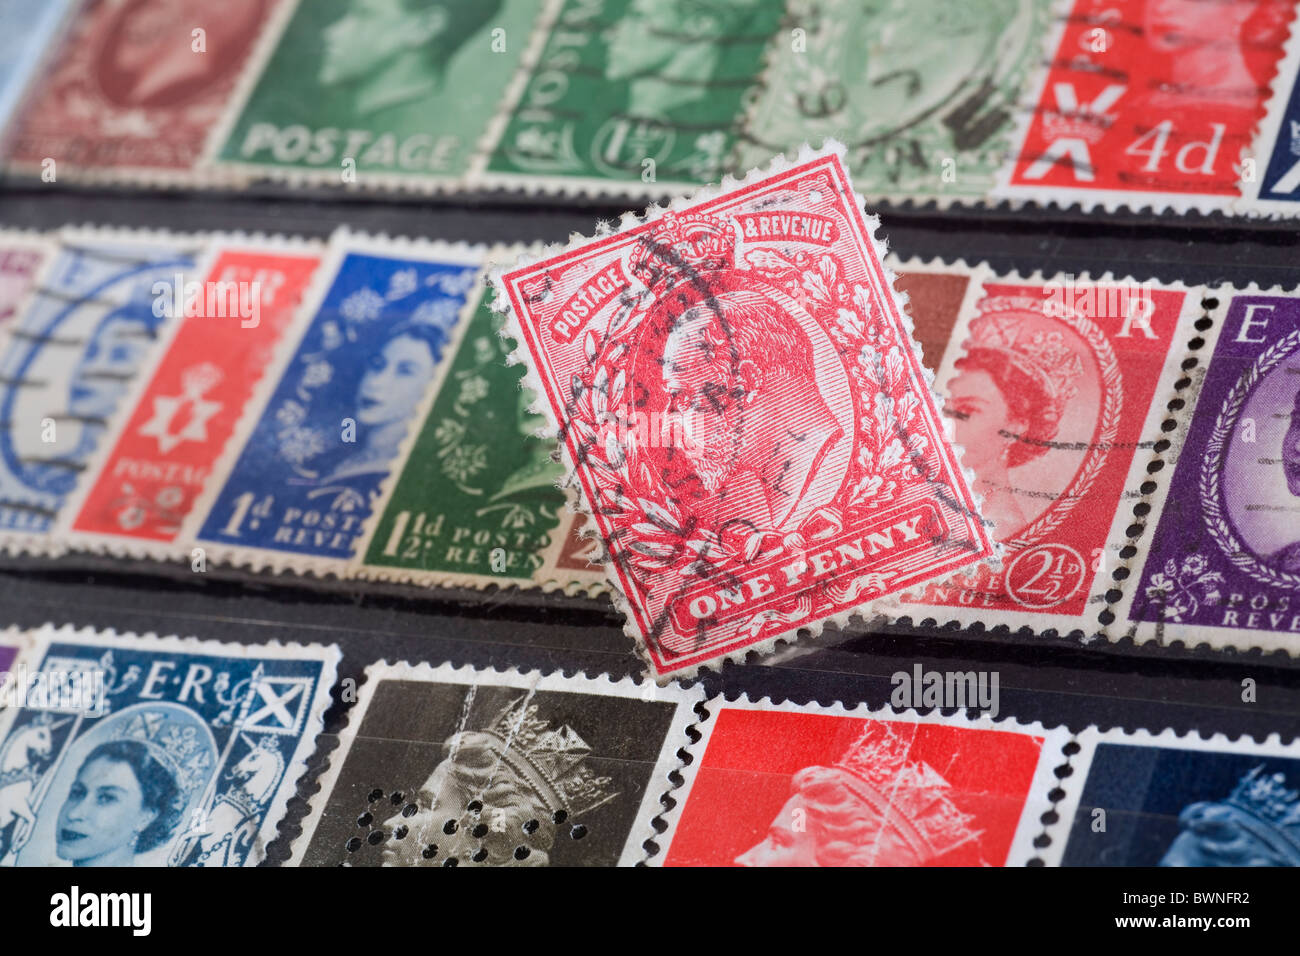 Timbre-poste britannique avec le roi George V, donc peut-être le timbre de datation autour de 1902 Banque D'Images